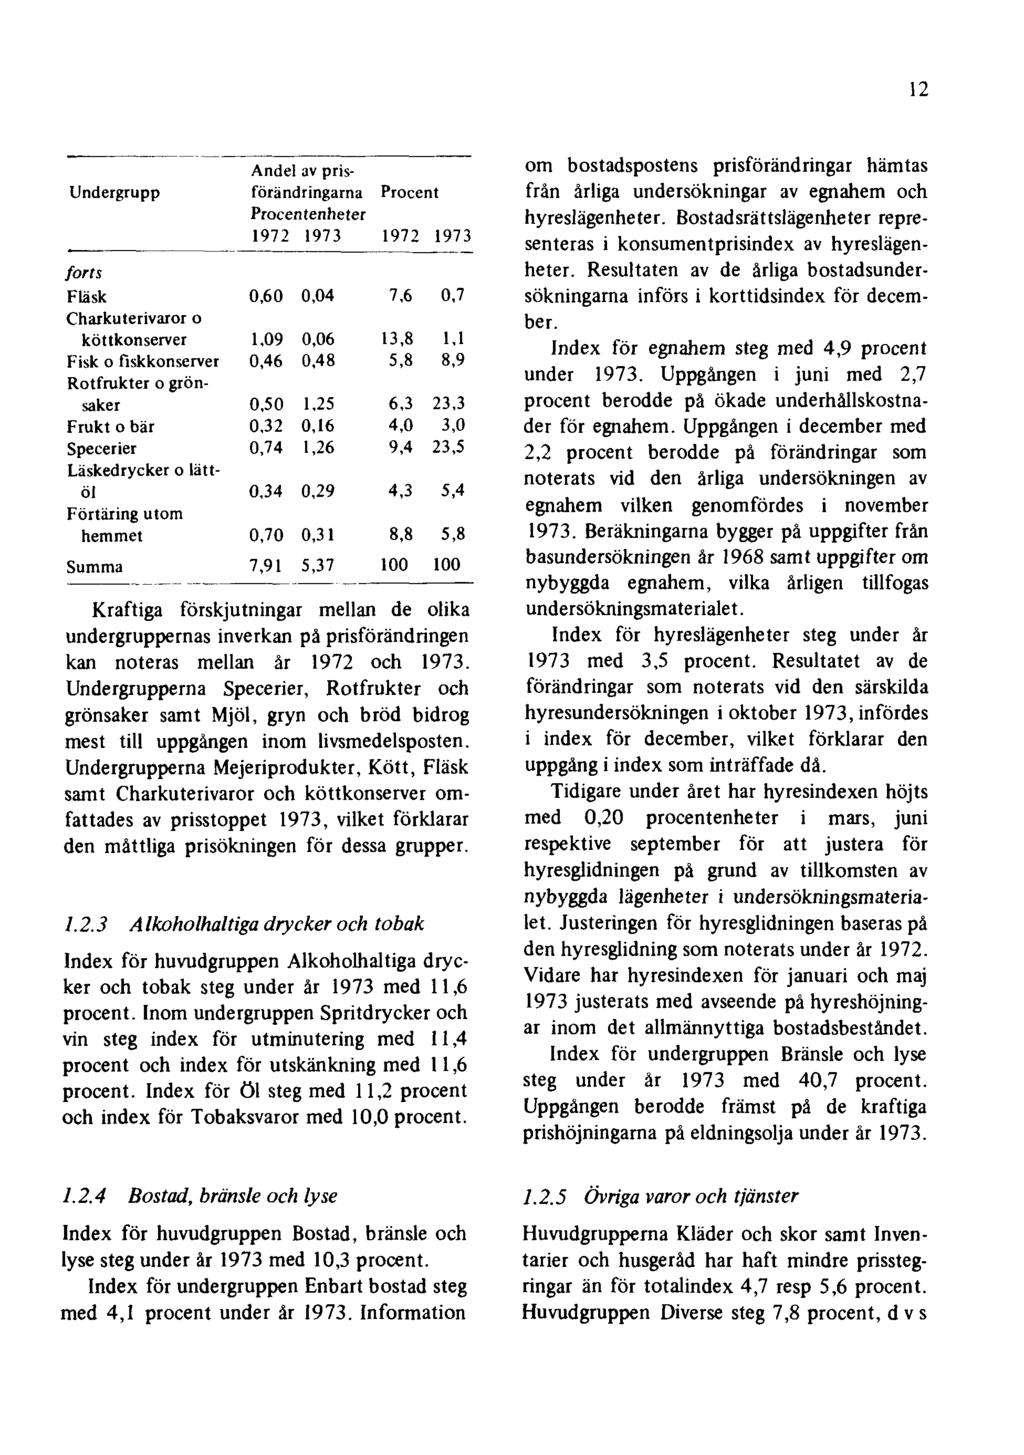 12 Kraftiga förskjutningar mellan de olika undergruppernas inverkan på prisförändringen kan noteras mellan år 1972 och 1973.